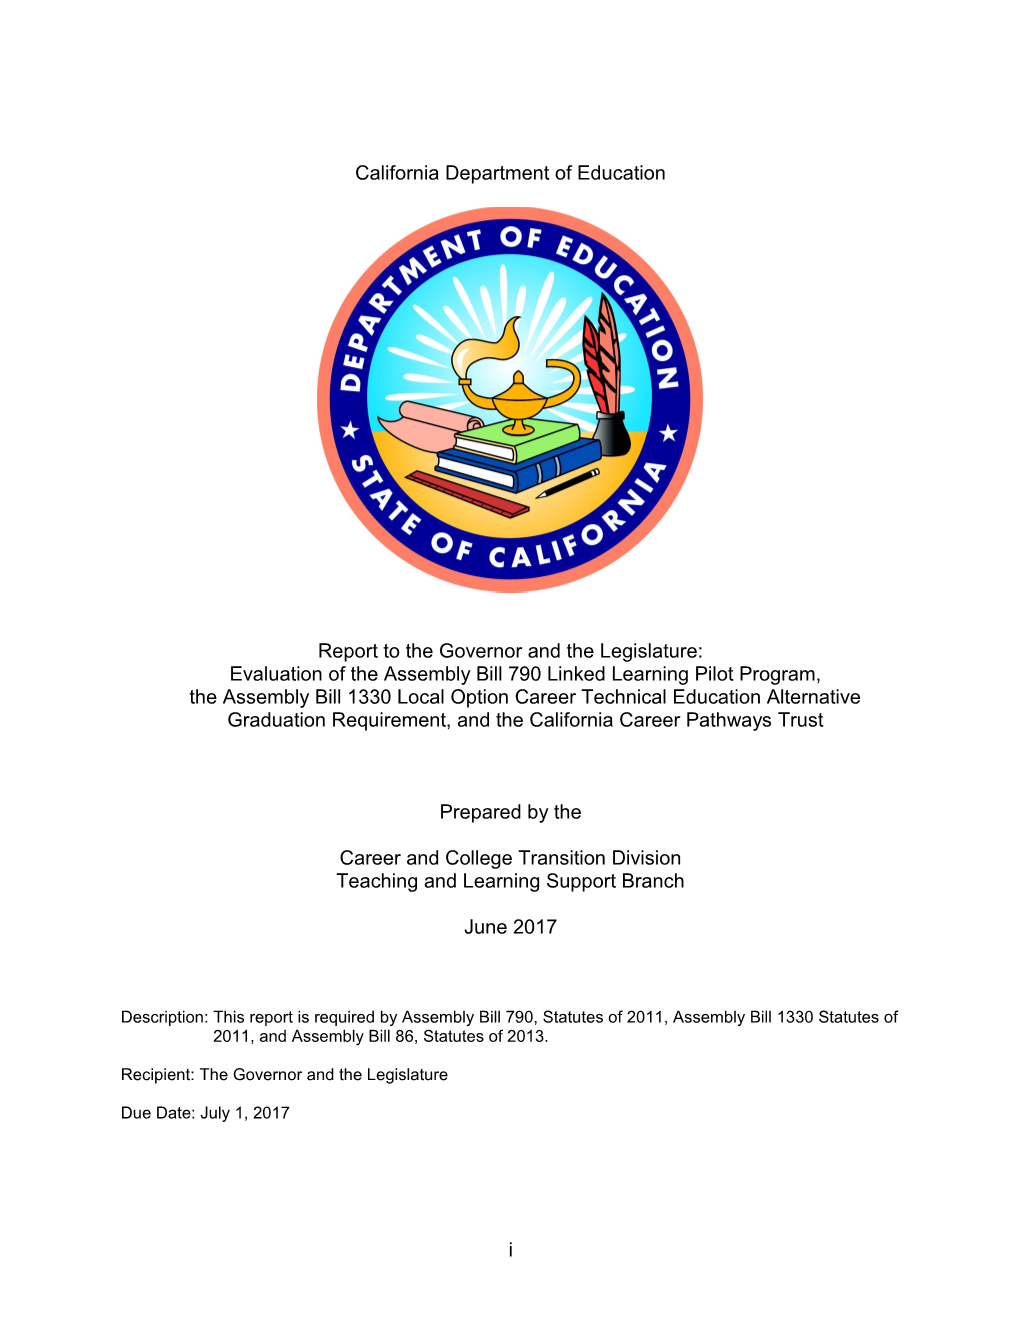 2017 Legislative Report - CCPT (CA Dept of Education)